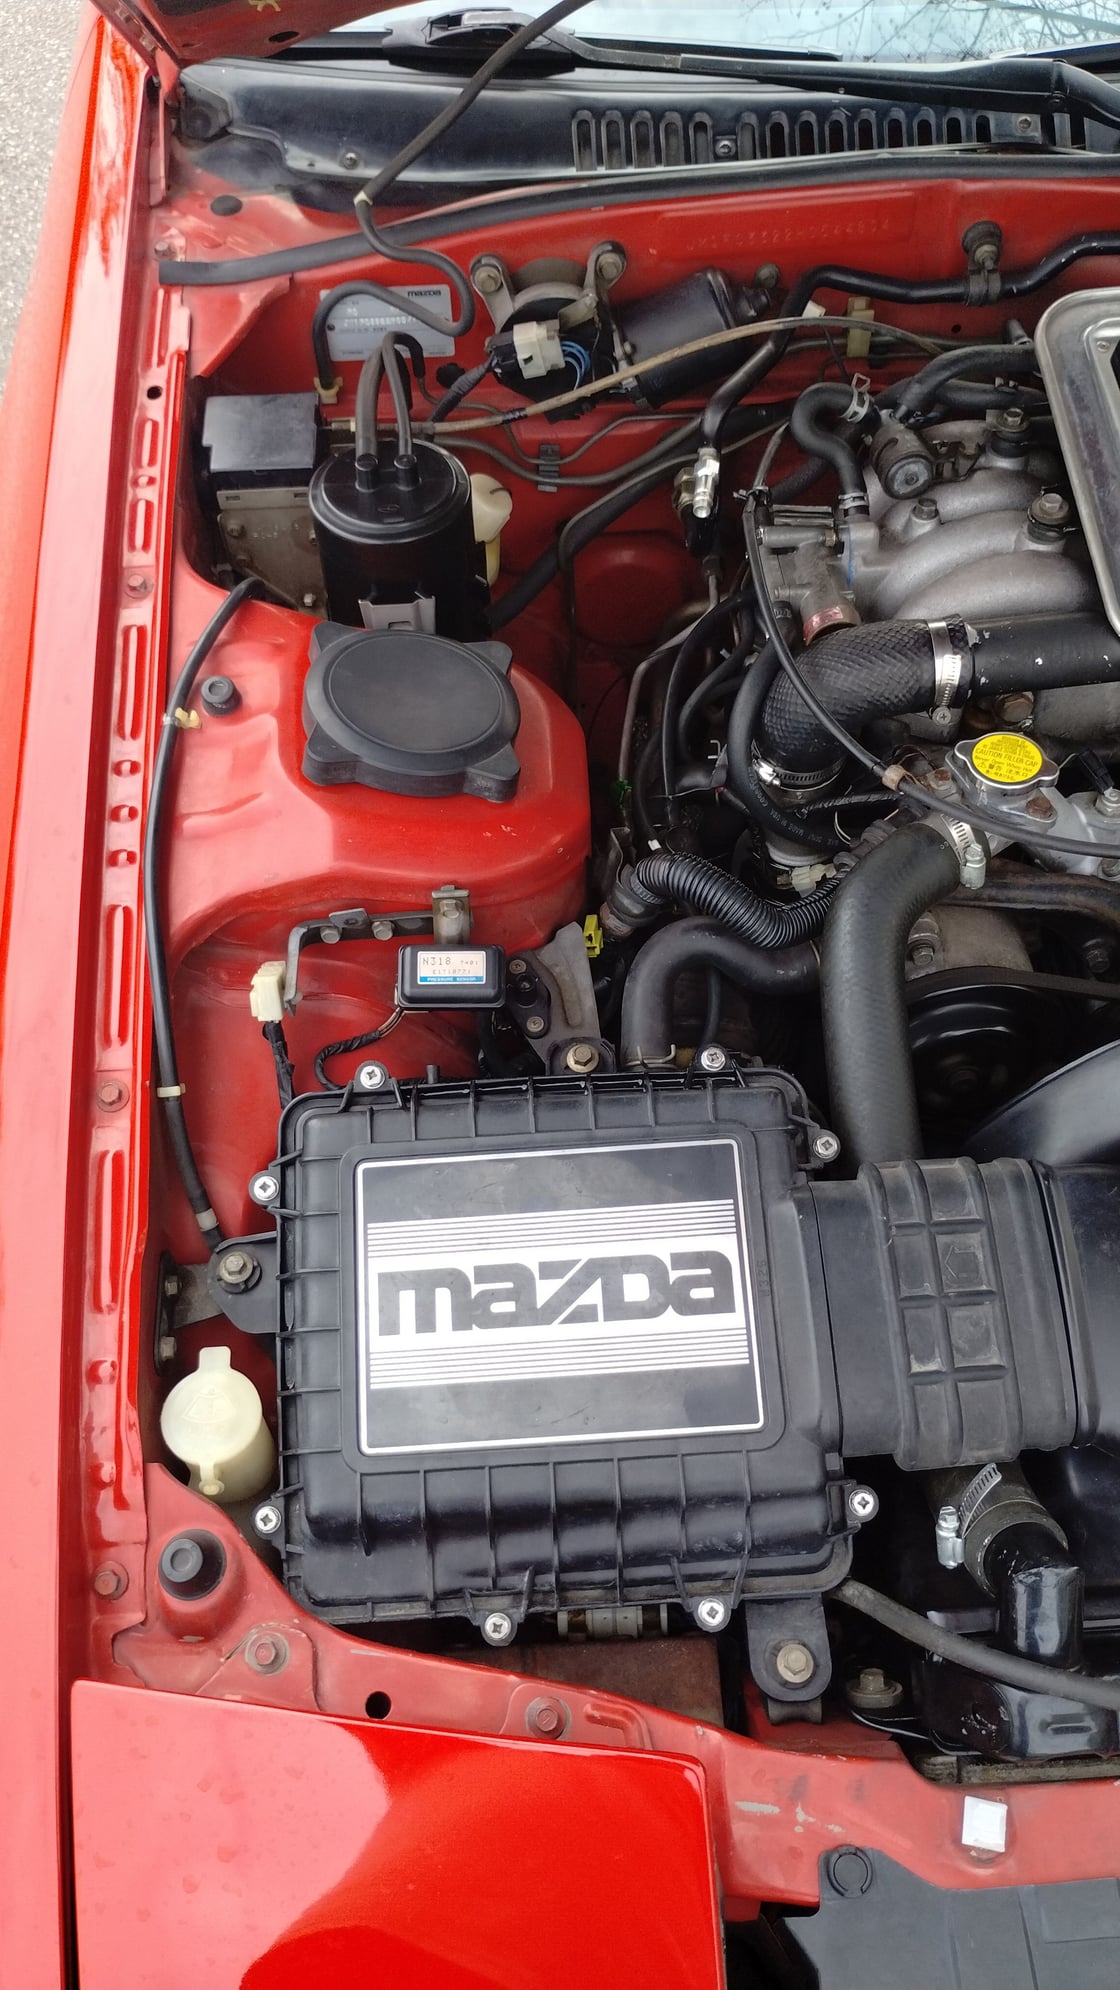 1987 Mazda RX-7 - 1987 Mazda RX-7 Turbo FS in North Georgia - Used - VIN JMLFC3322H0544804 - 158,368 Miles - 2 cyl - 2WD - Manual - Coupe - Red - Dawsonville, GA 30534, United States